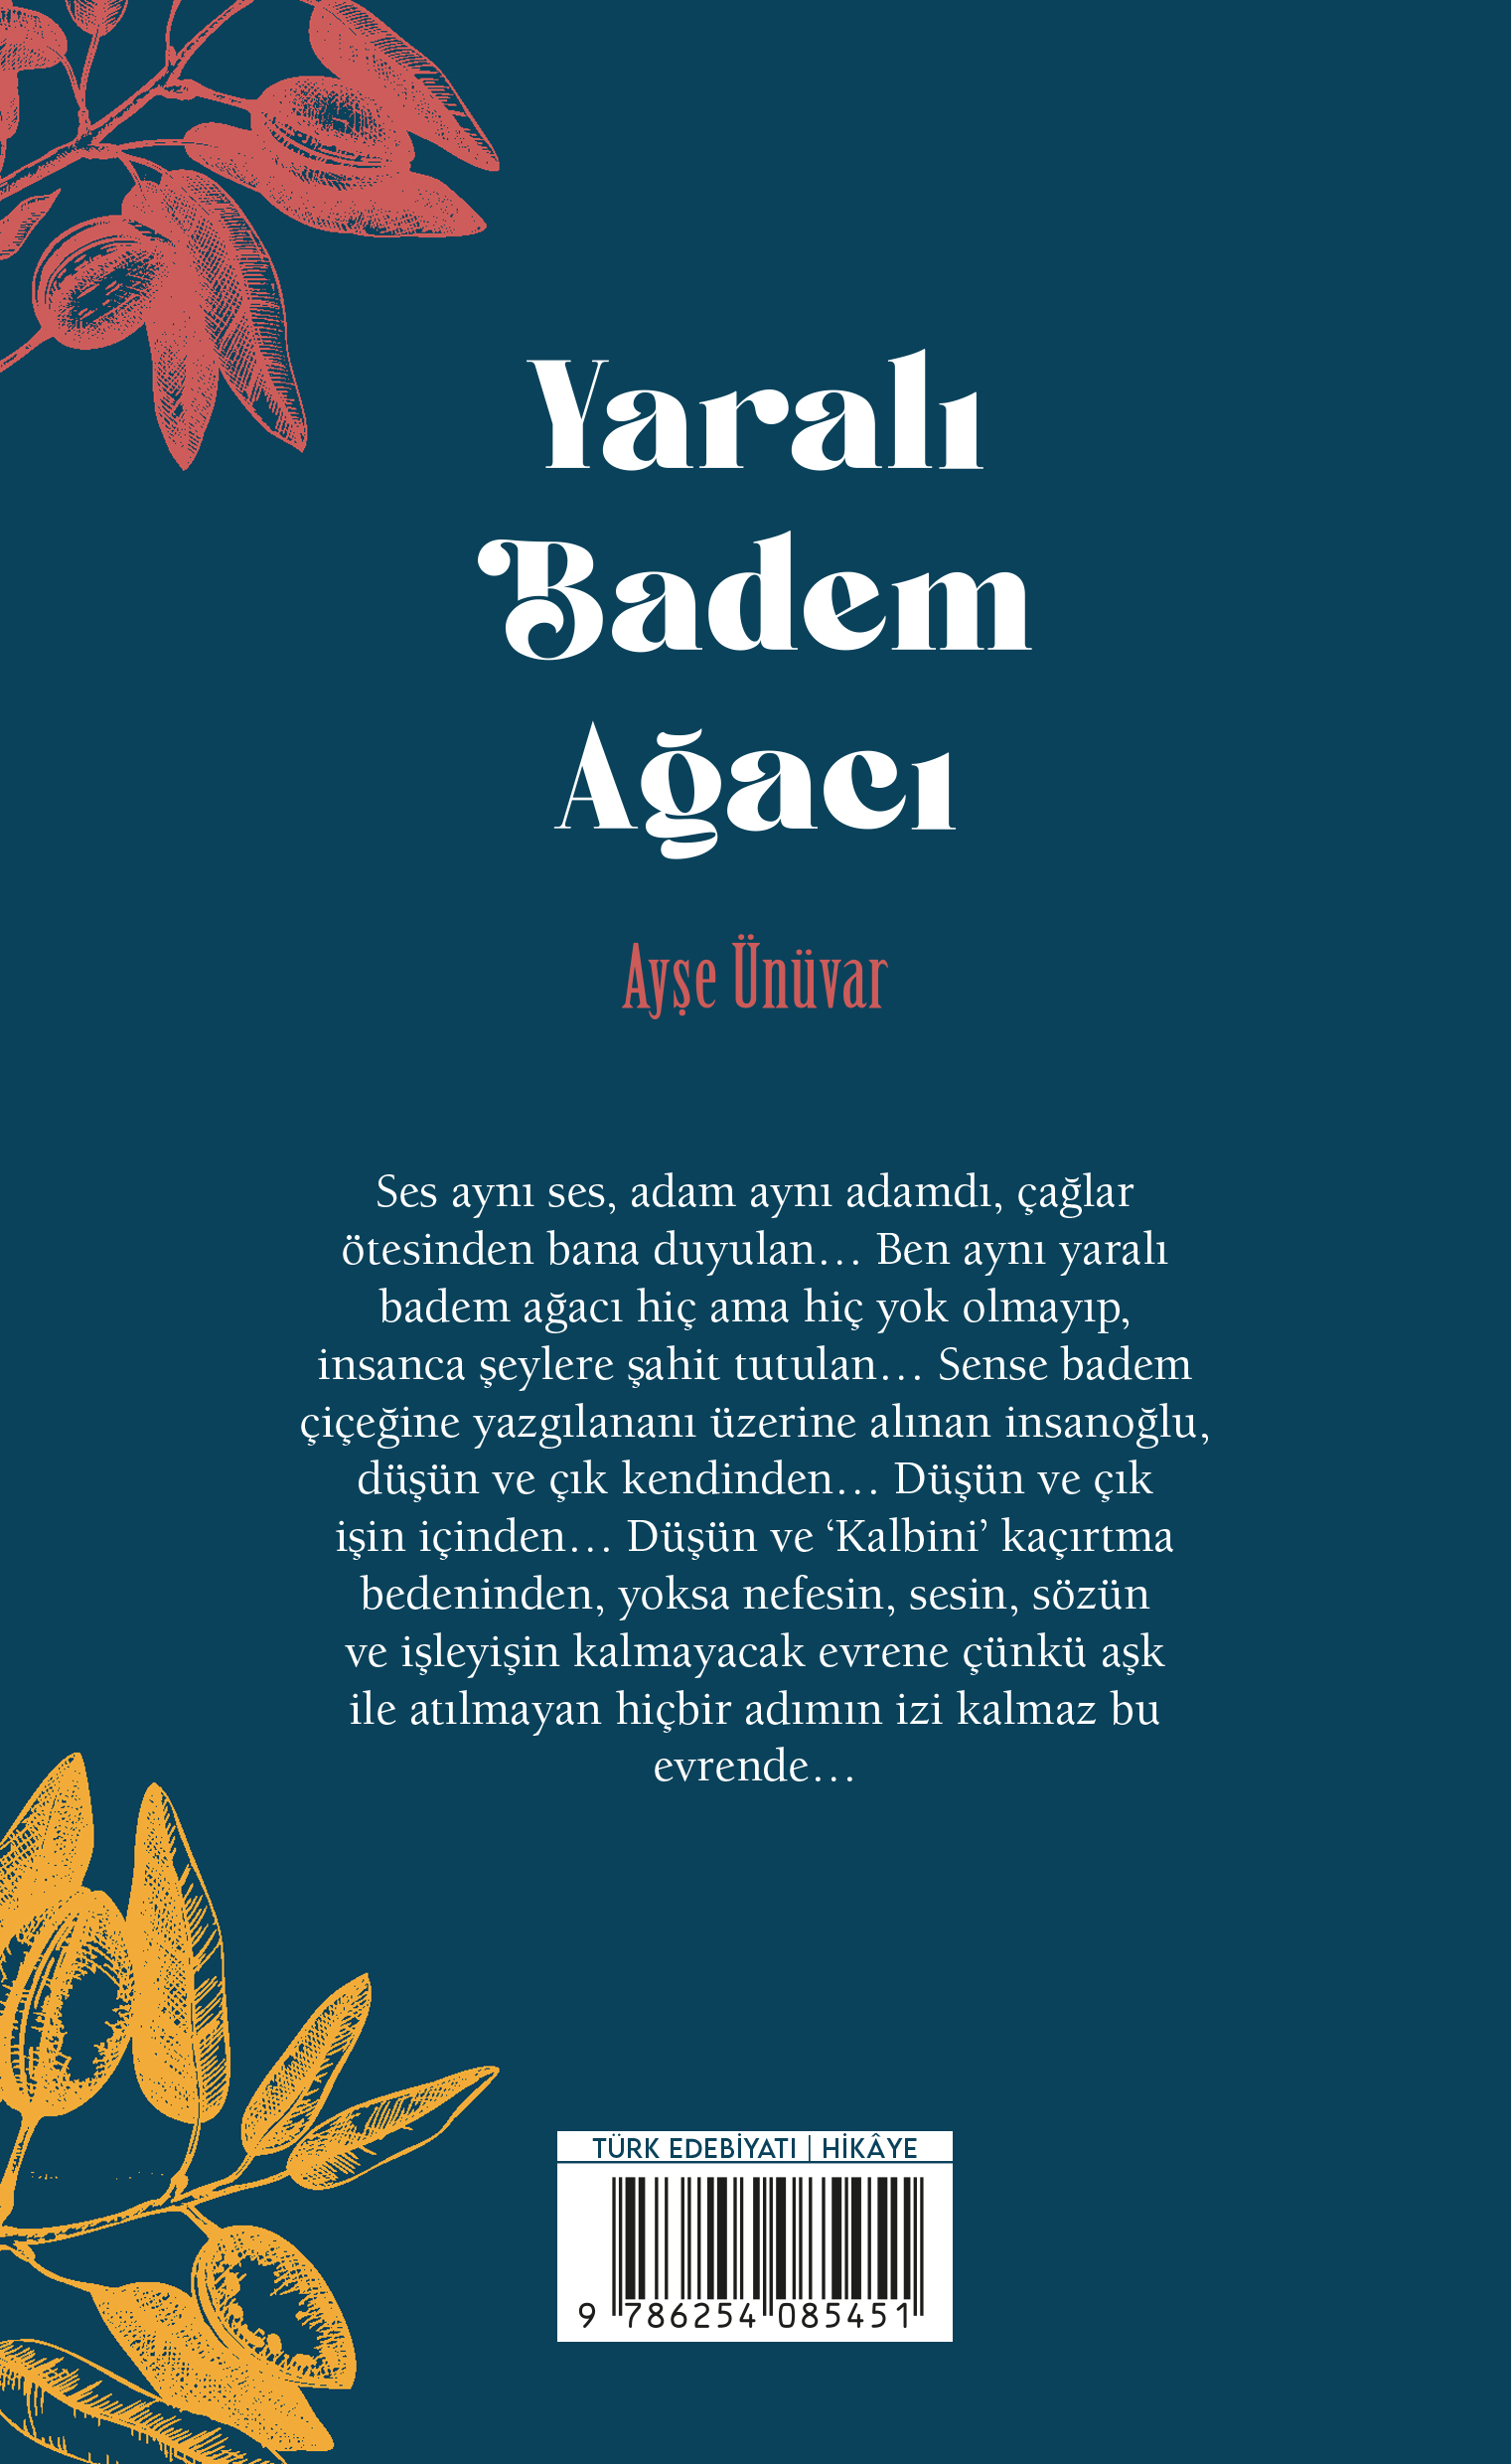 Yaralı_Badem_Agaci_Mahmut_Dogan_03